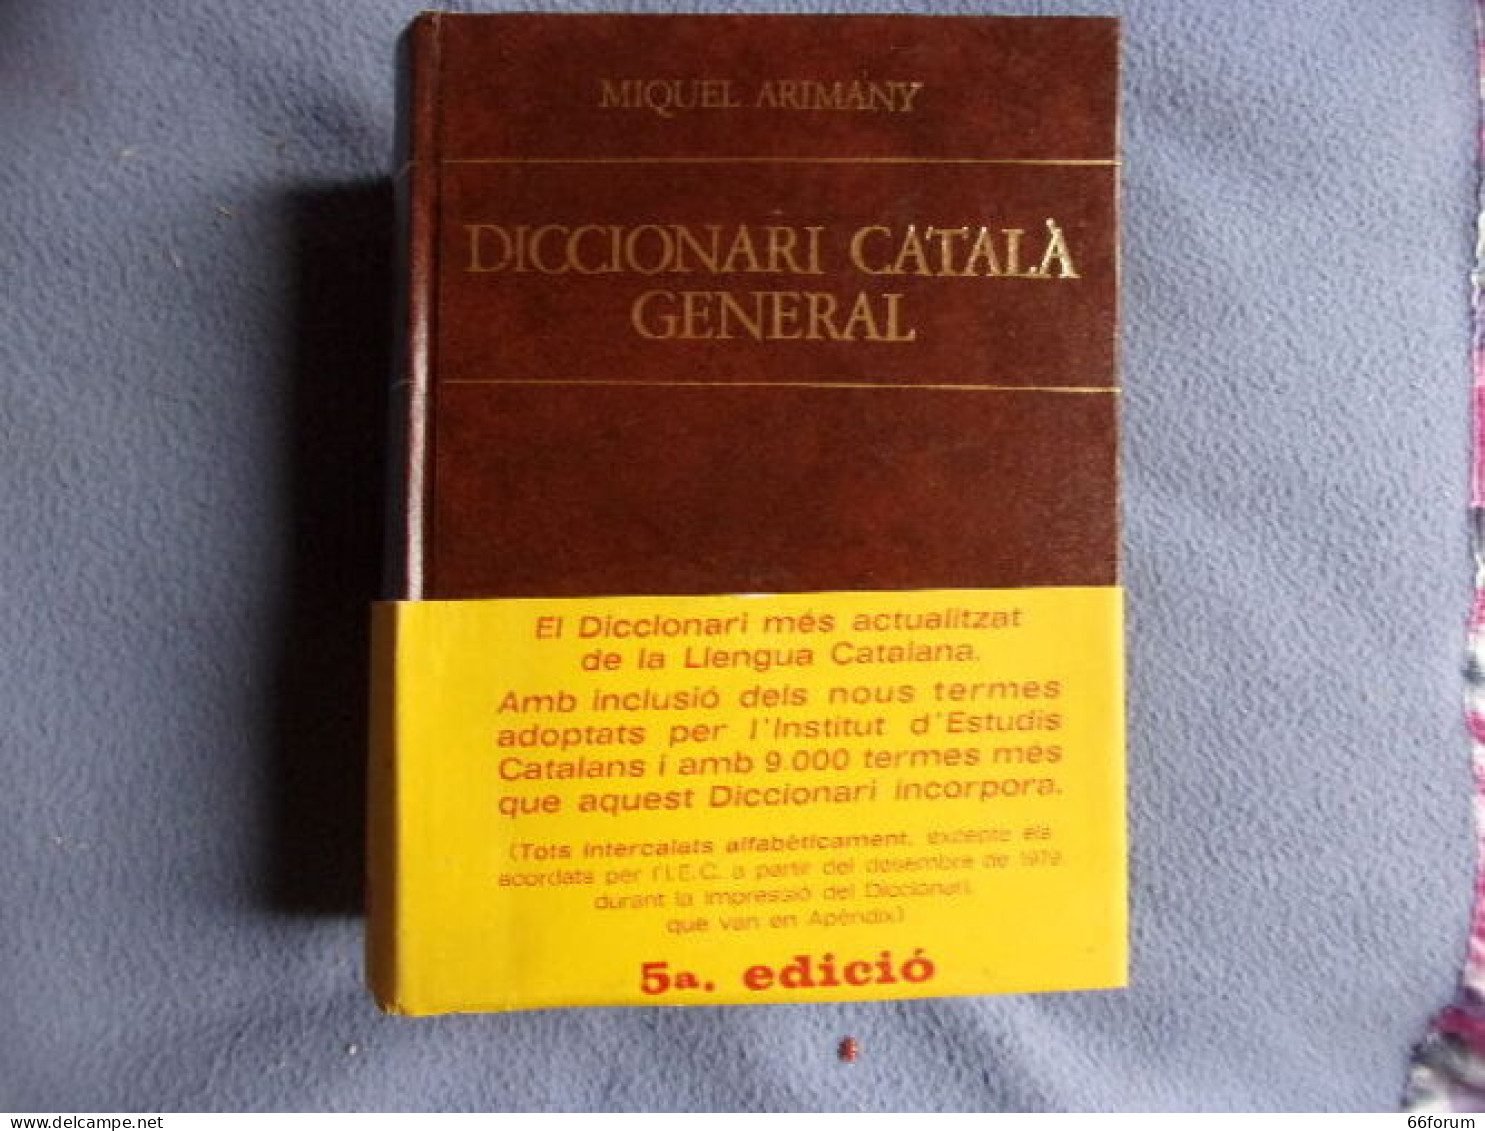 Diccionari Catala General - Dictionaries